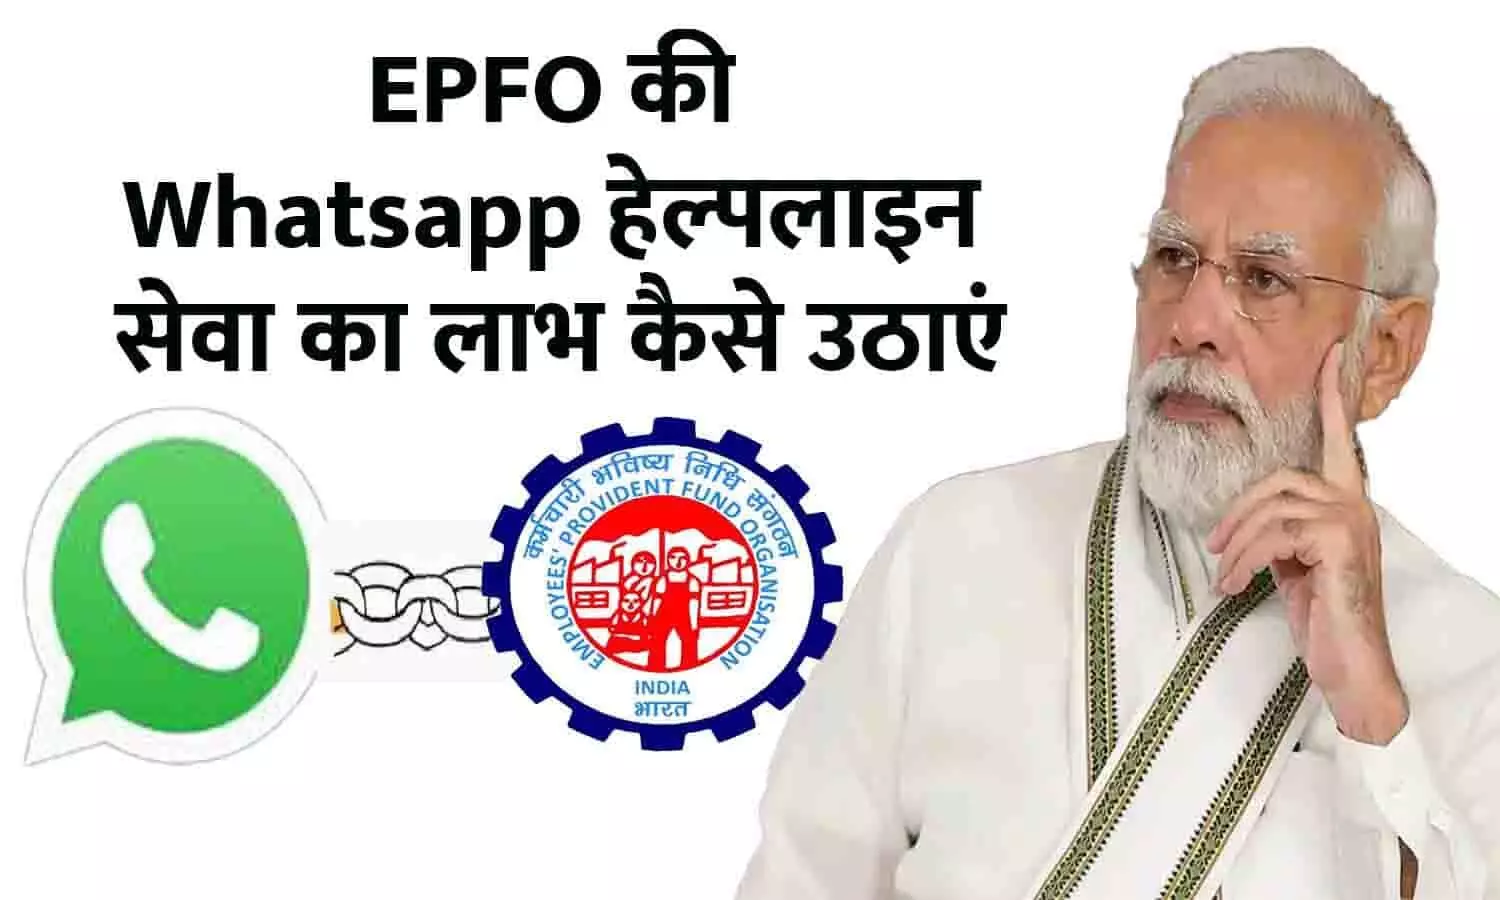 EPFO WhatsApp Helpline Number Check: बड़ा ऐलान, PF अकाउंट से जुड़ी समस्याओ के लिए इन Whatsapp नंबरों पर करें शिकायत, तुरंत होगा समाधान